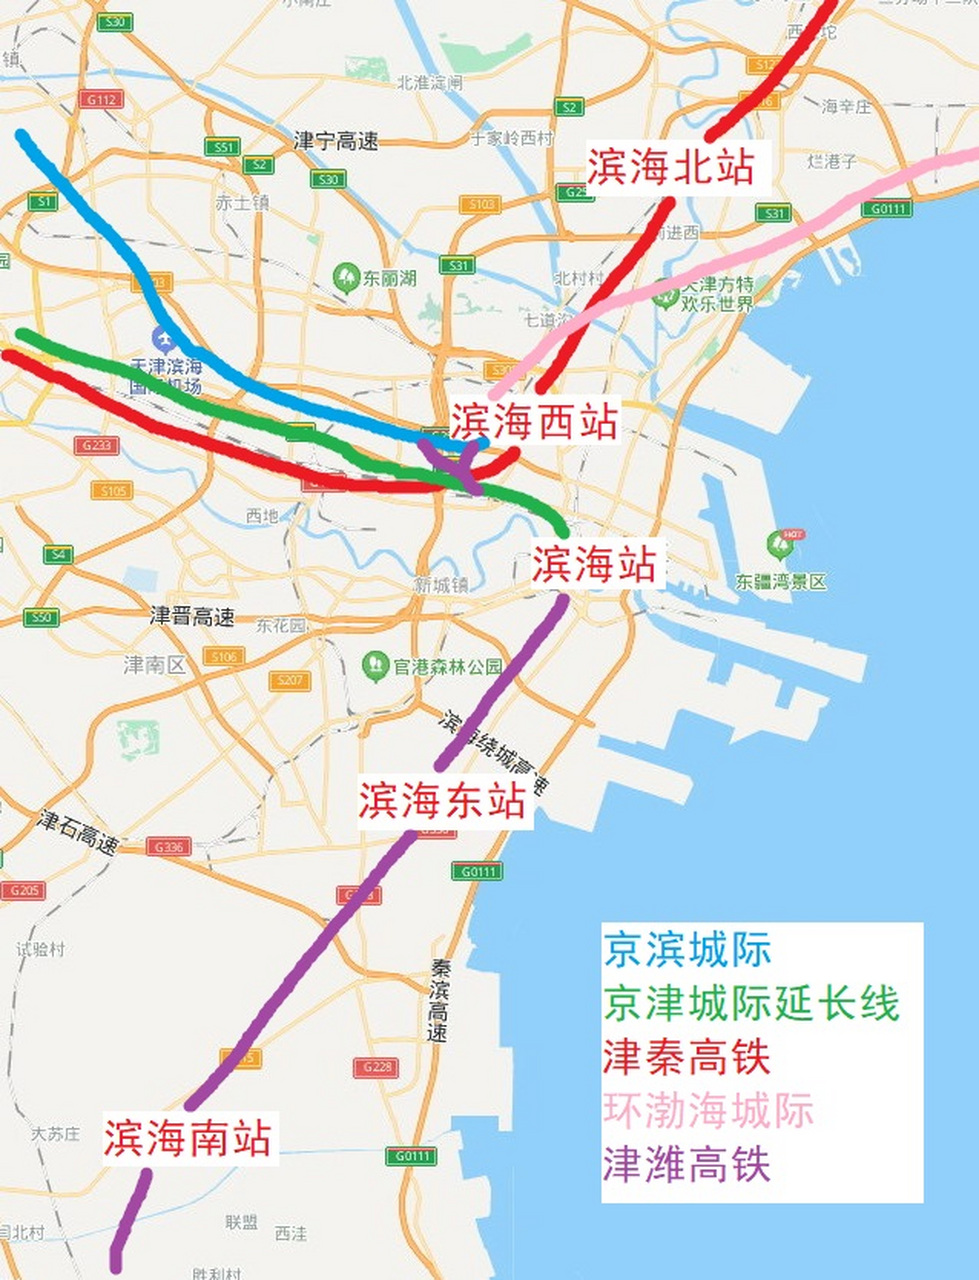 滨海新区将集齐东西南北中五个高铁站,召唤神龙?